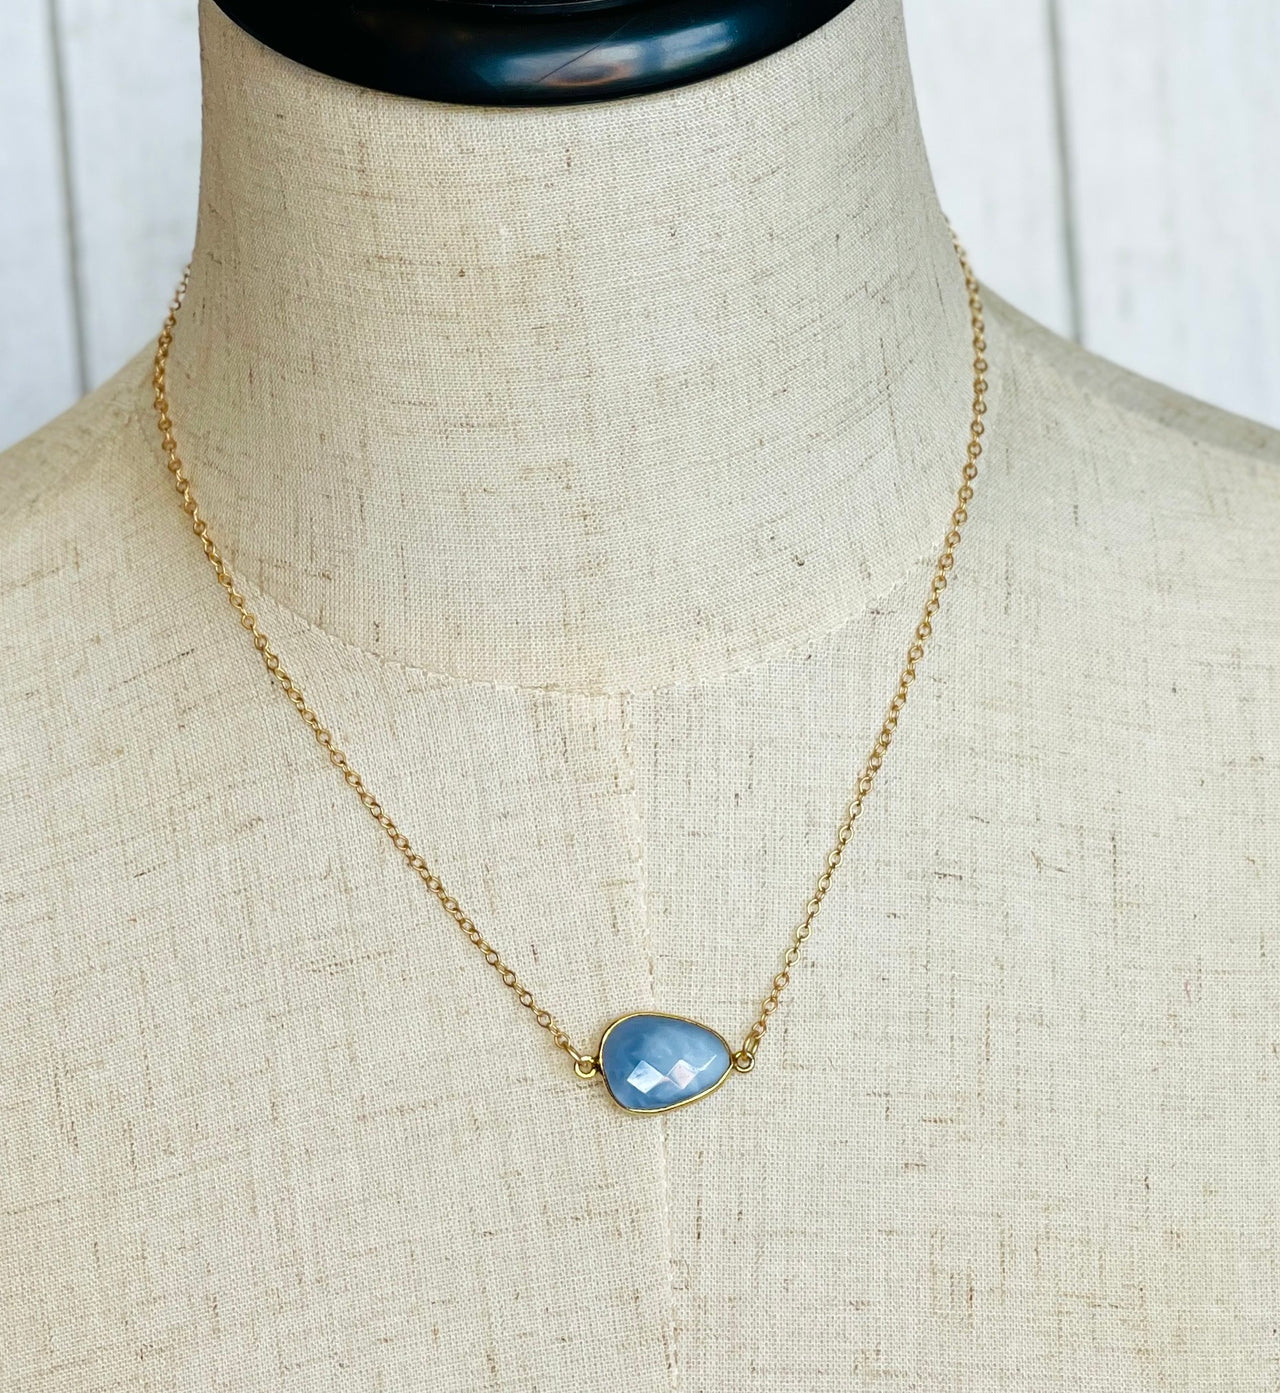 Blue Opal Necklace